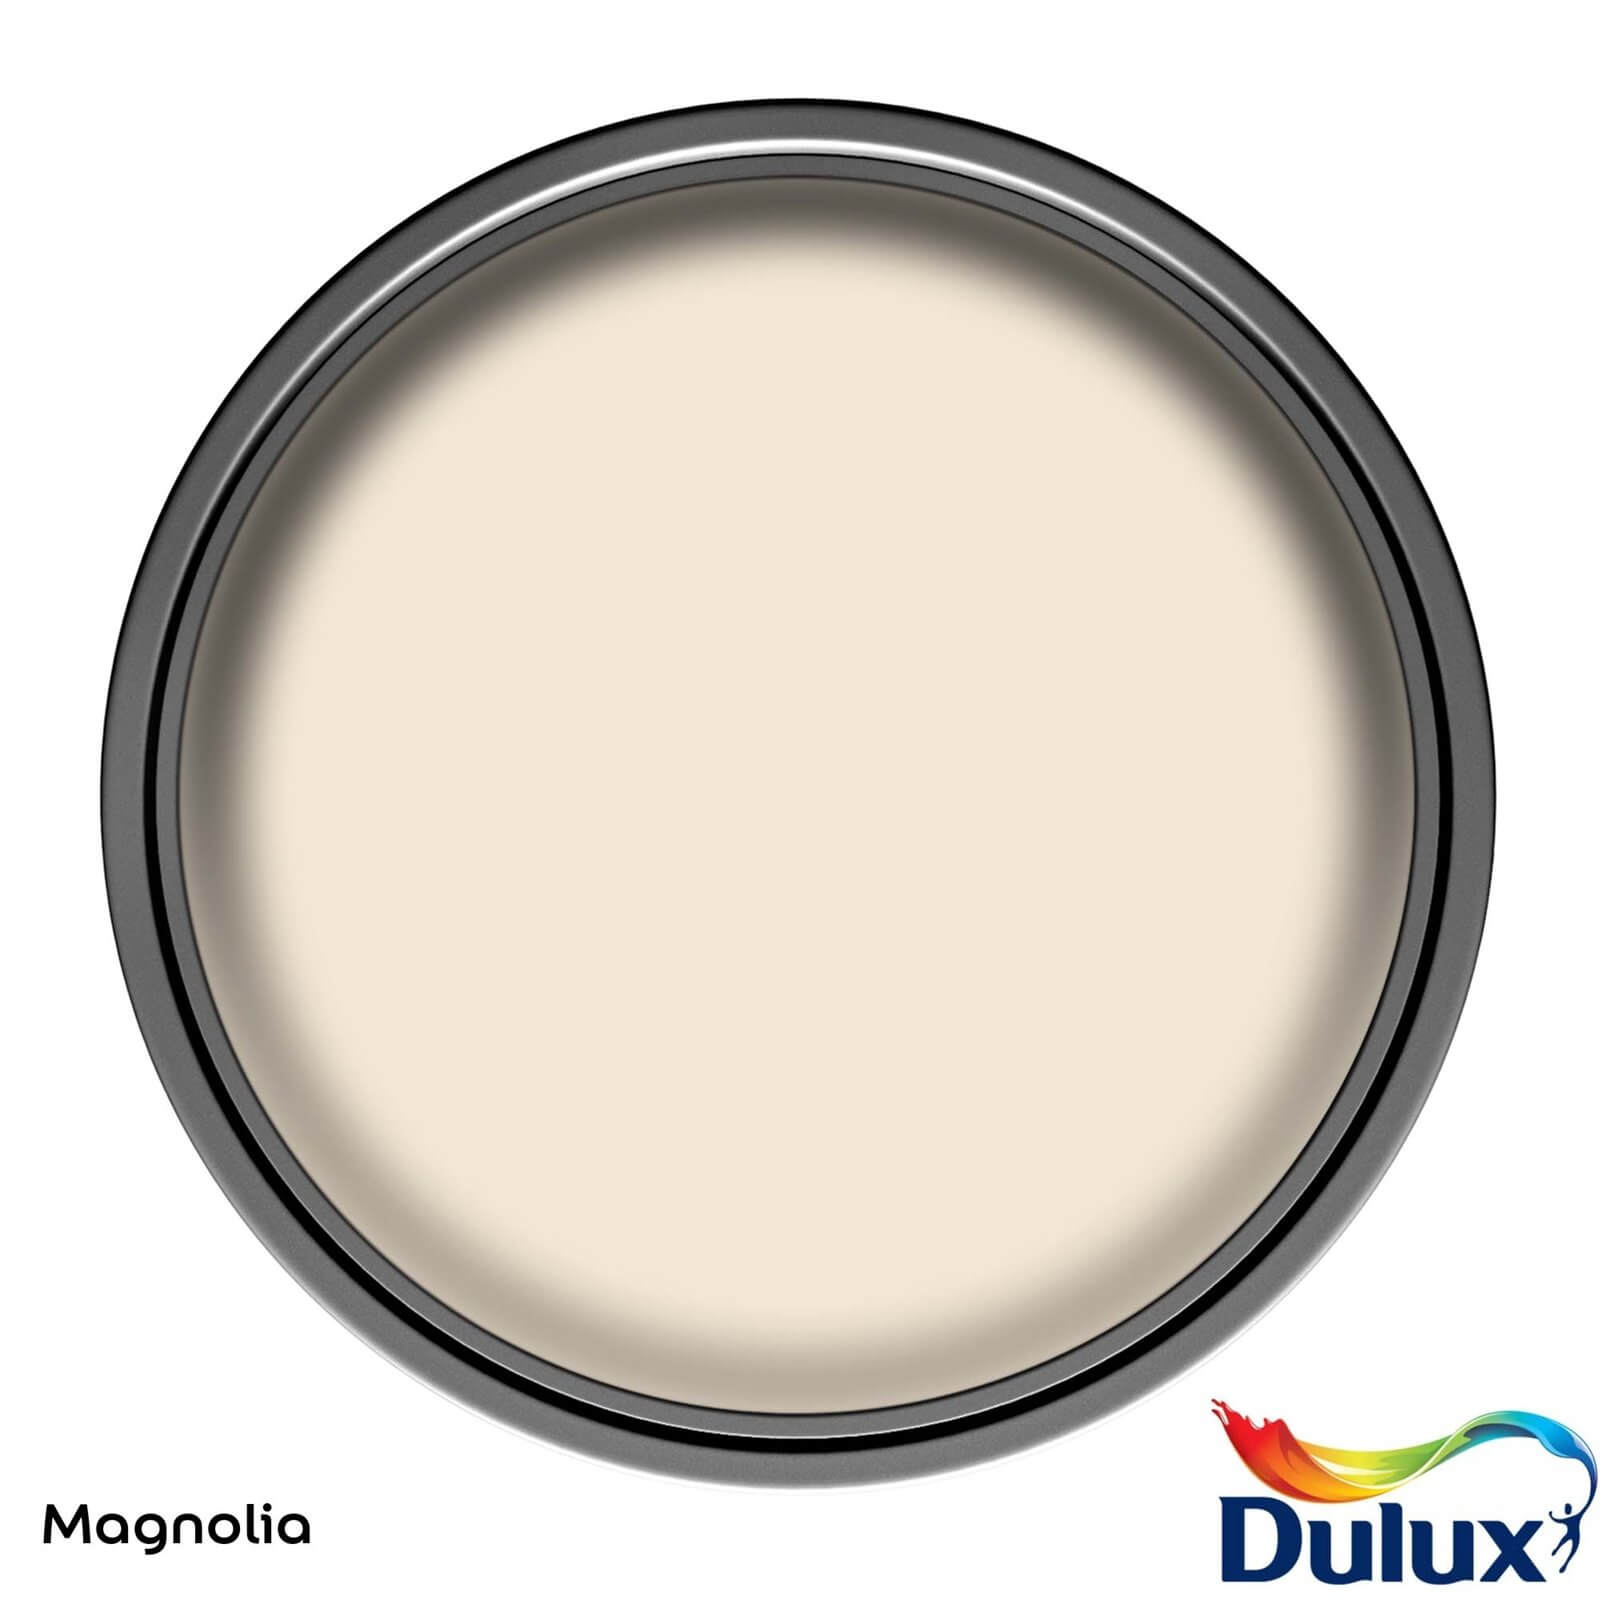 Dulux Easycare Bathroom Soft Sheen Emulsion Paint Magnolia - 2.5L